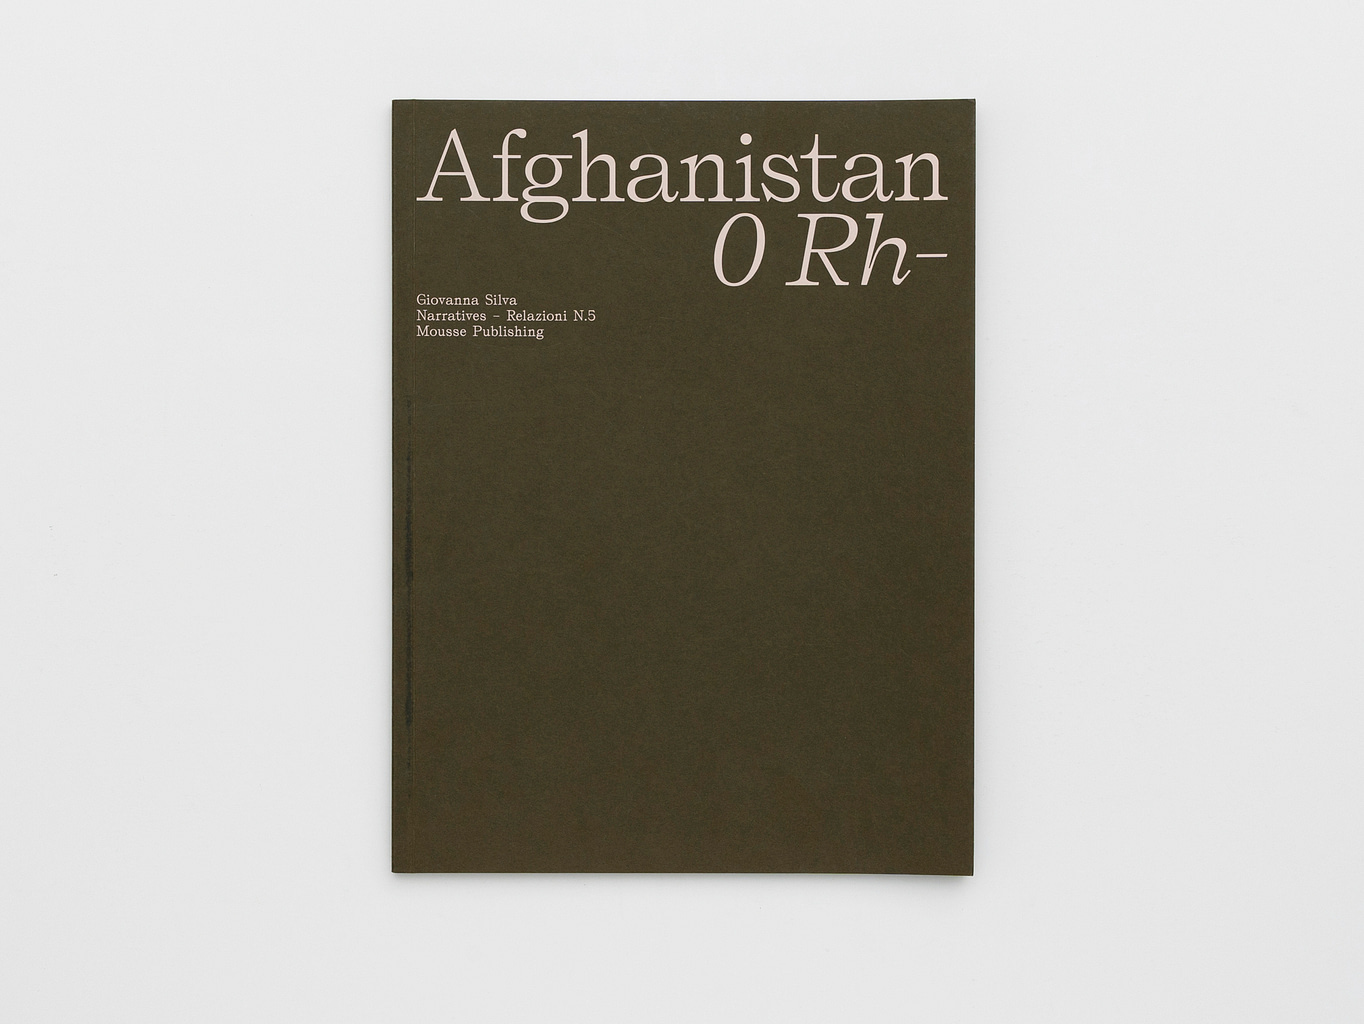 Afghanistan. 0 Rh –